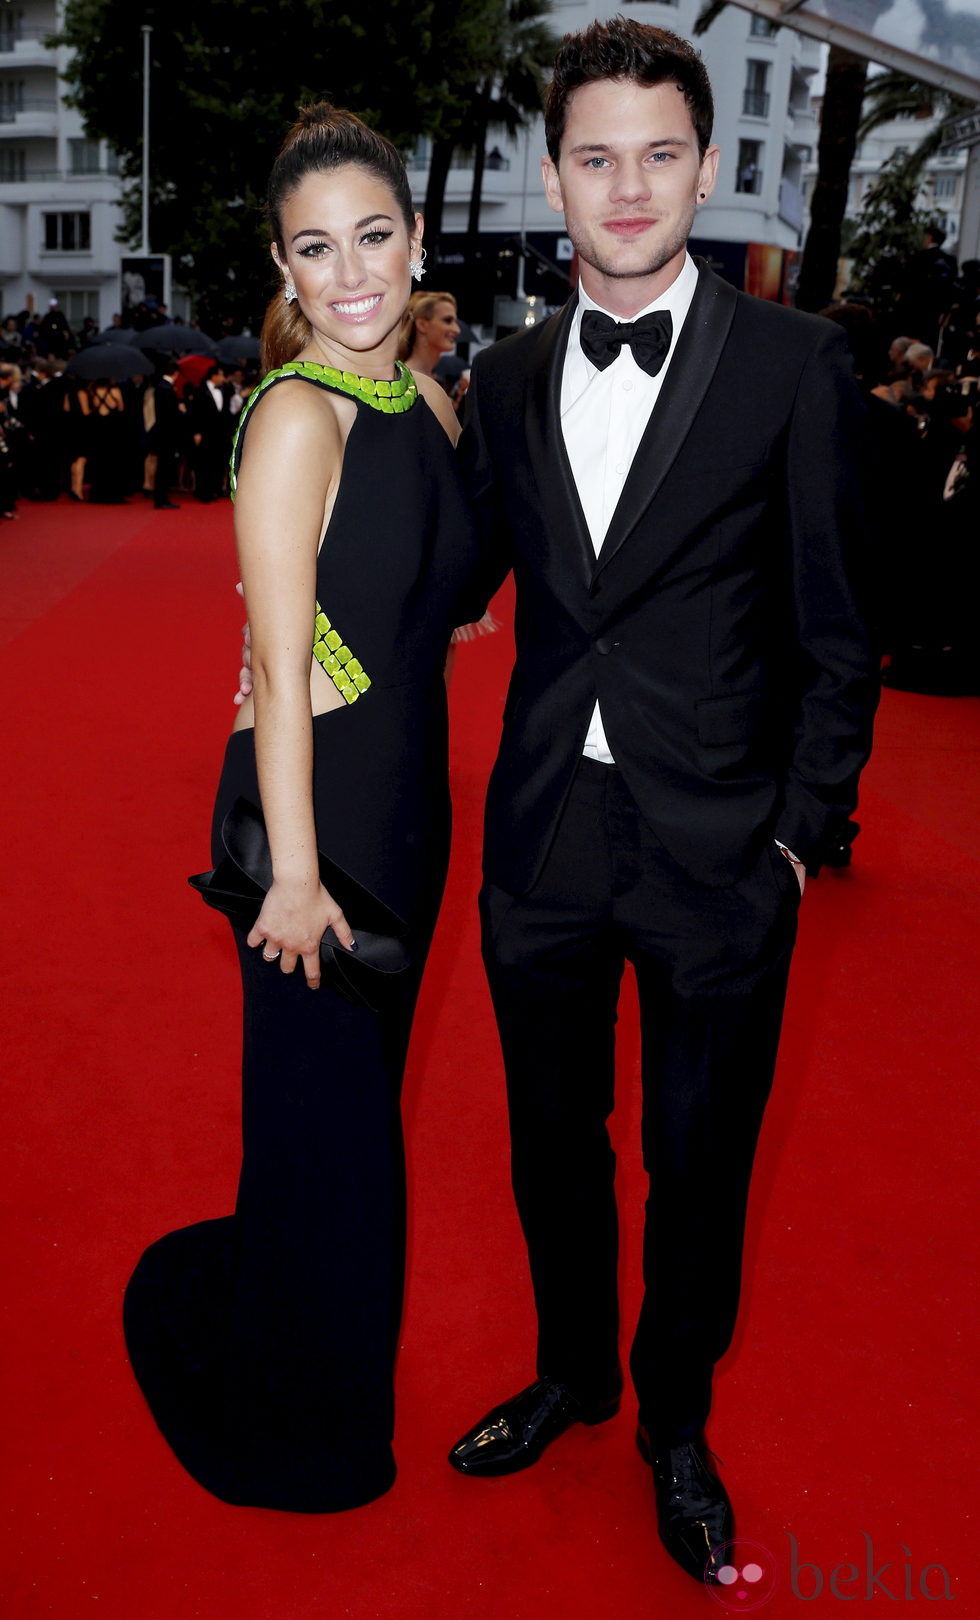 Blanca Suárez y Jeremy Irvine en la ceremonia de apertura del Festival de Cannes 2013